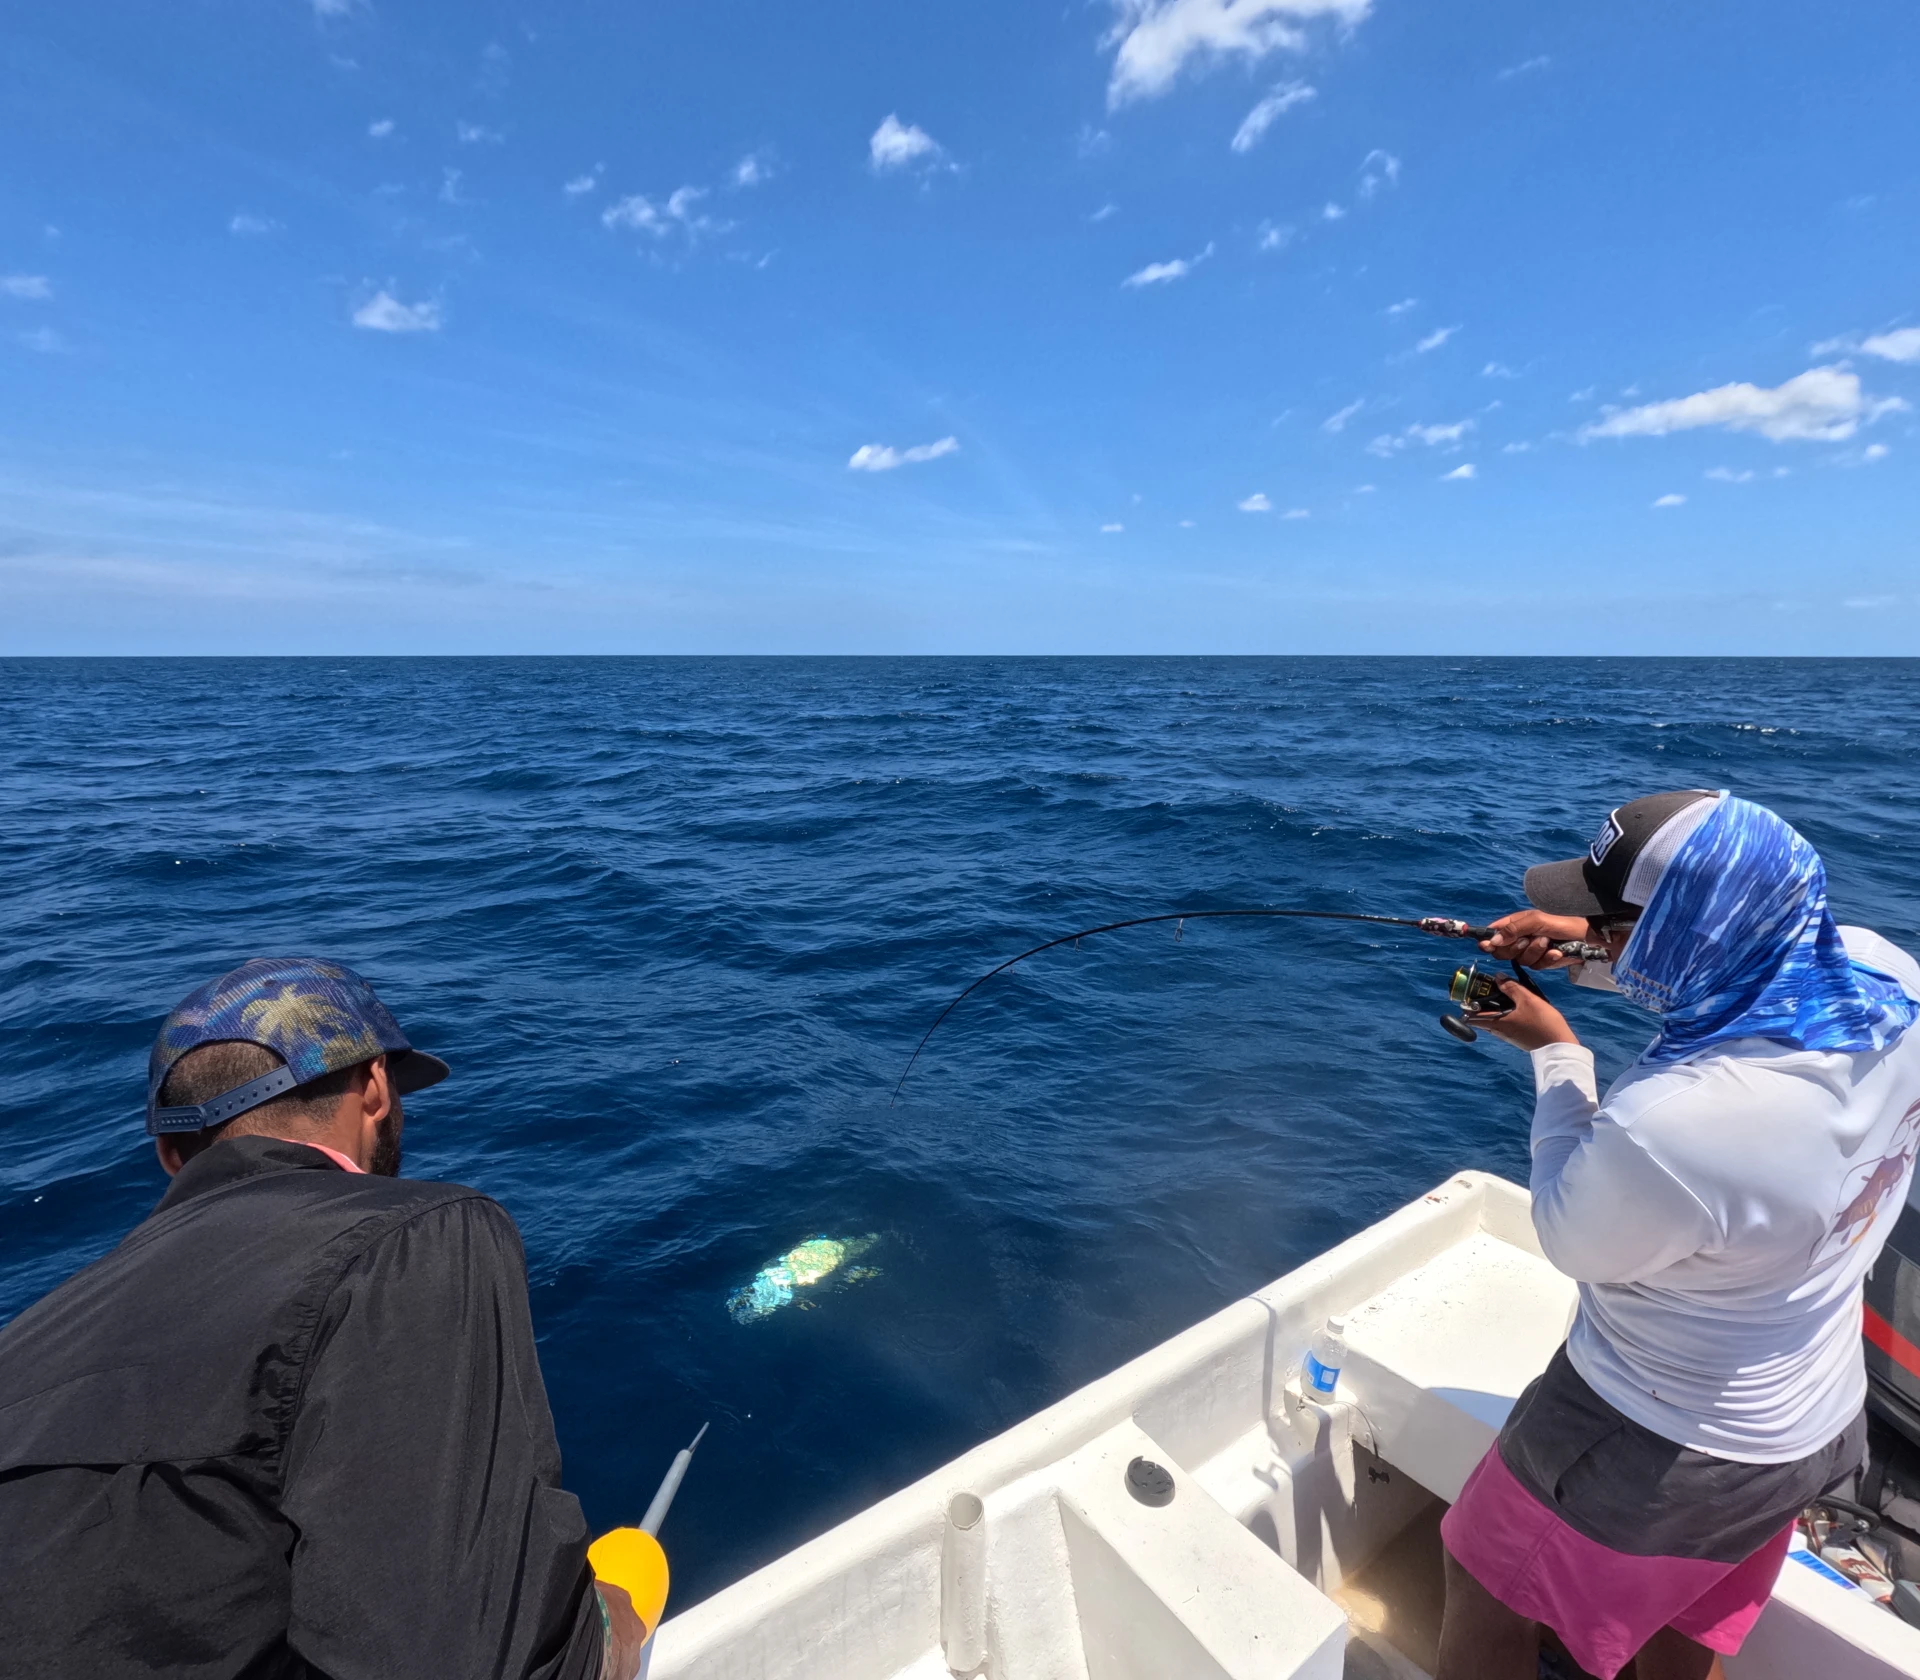 Duelo en el Pacífico - Una majestuosa tuna de aleta amarilla luchando contra la resistencia del carrete, una batalla conmovedora entre el hombre y la naturaleza en las profundidades de Cambutal, Panamá.